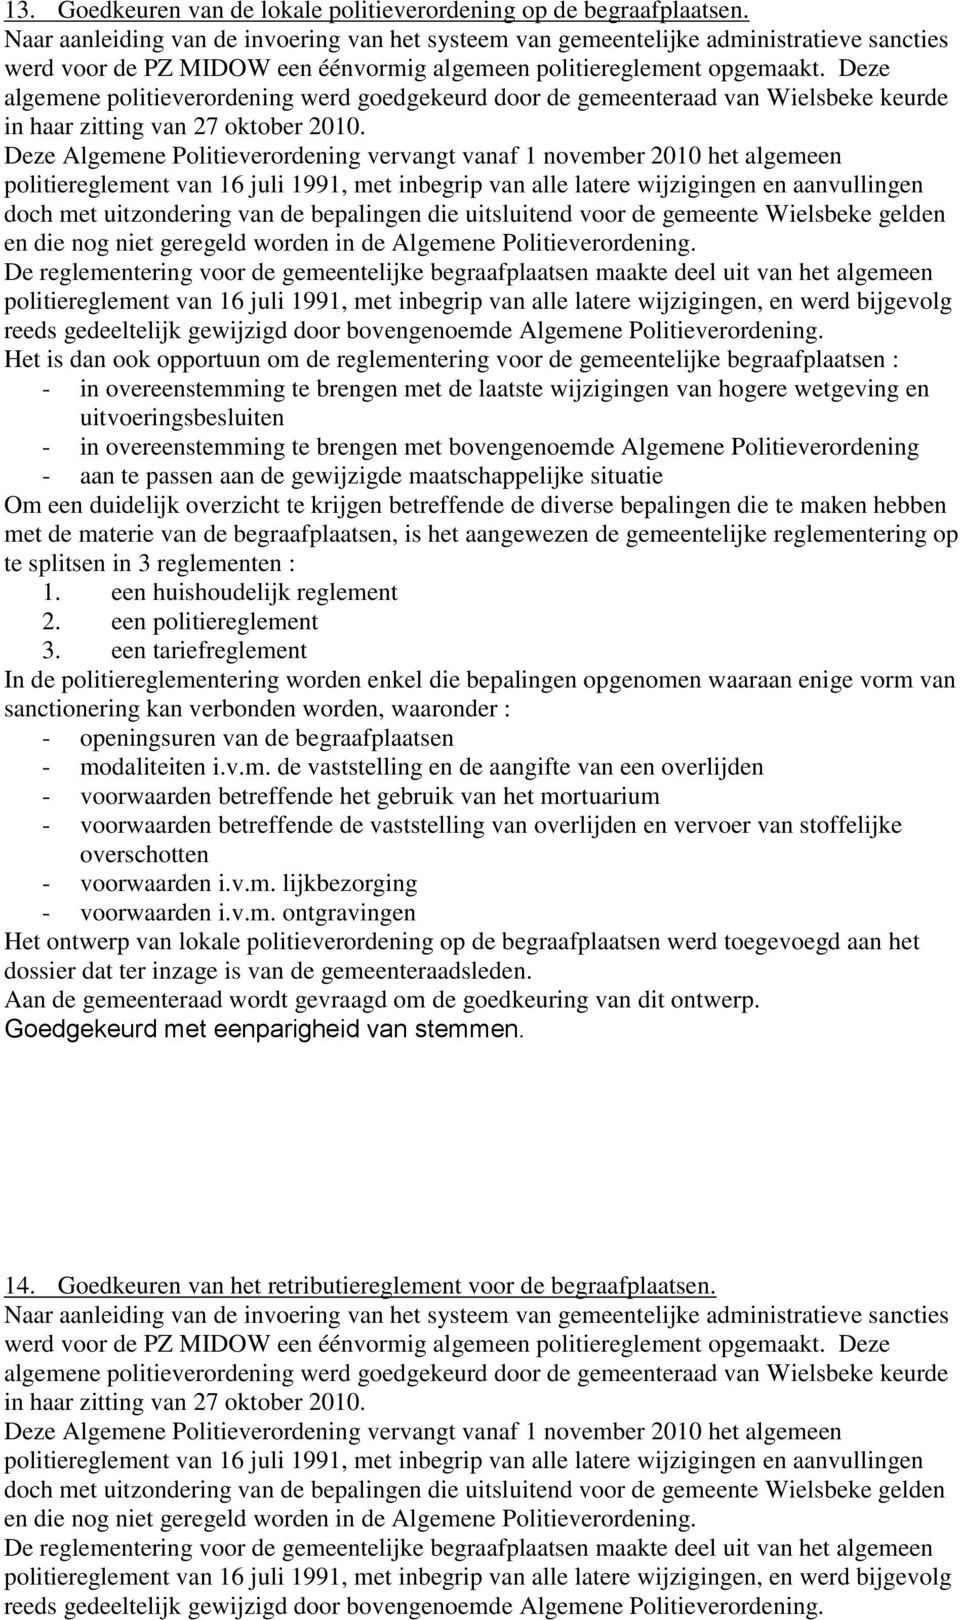 Deze algemene politieverordening werd goedgekeurd door de gemeenteraad van Wielsbeke keurde in haar zitting van 27 oktober 2010.